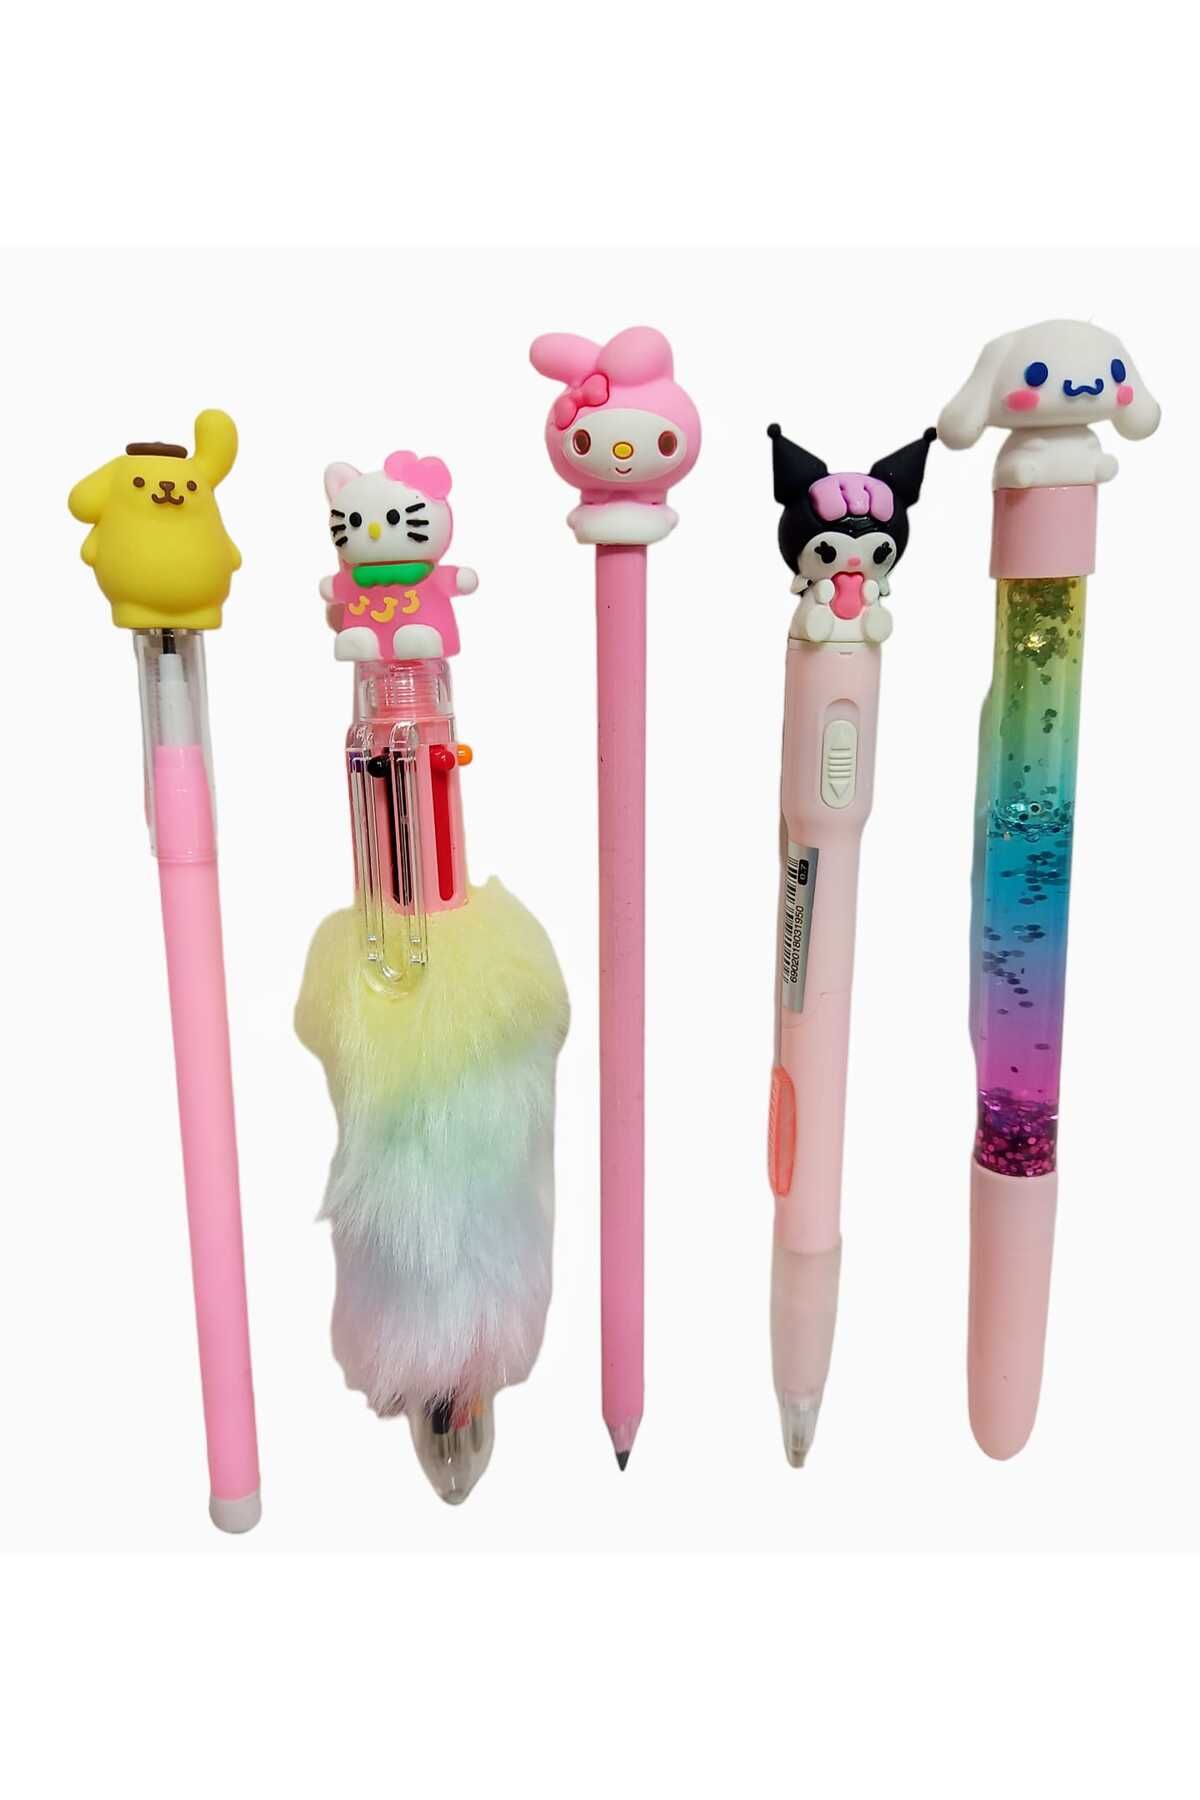 sevgi kırtasiye Süslü Hediyelik Hello Kitty Kurşun Kalemli 5 Li Set Işıklı Kalem Seti Kurşun Kalem Simli Sulu Kalem